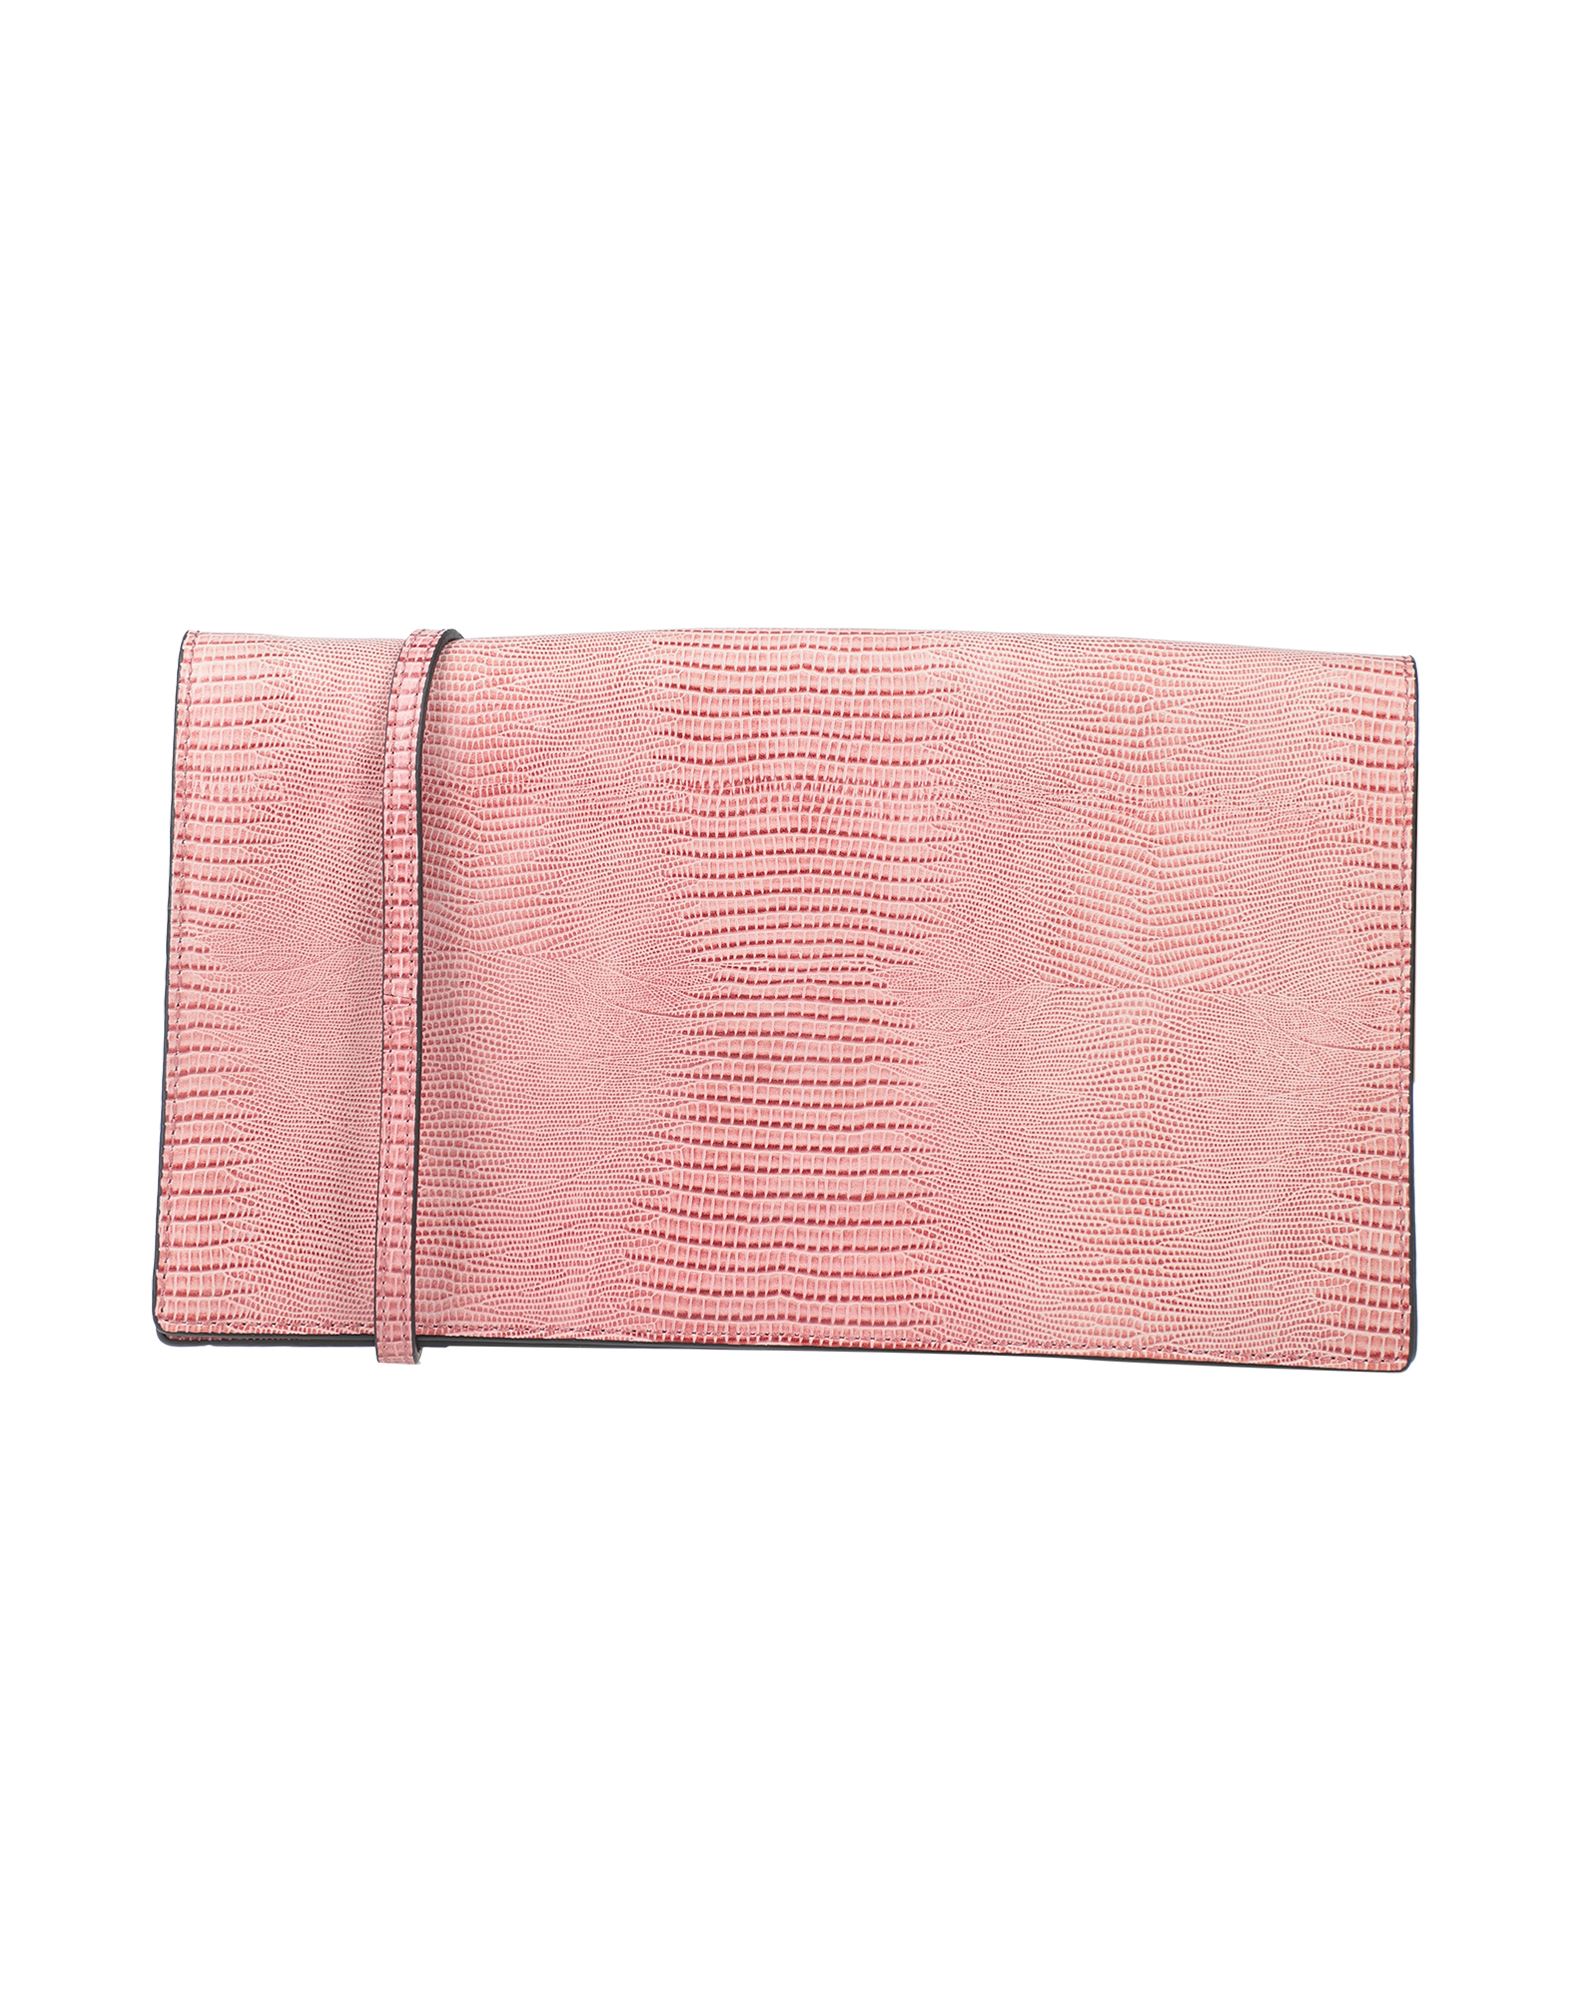 Essentiel Antwerp Handbags In Pink